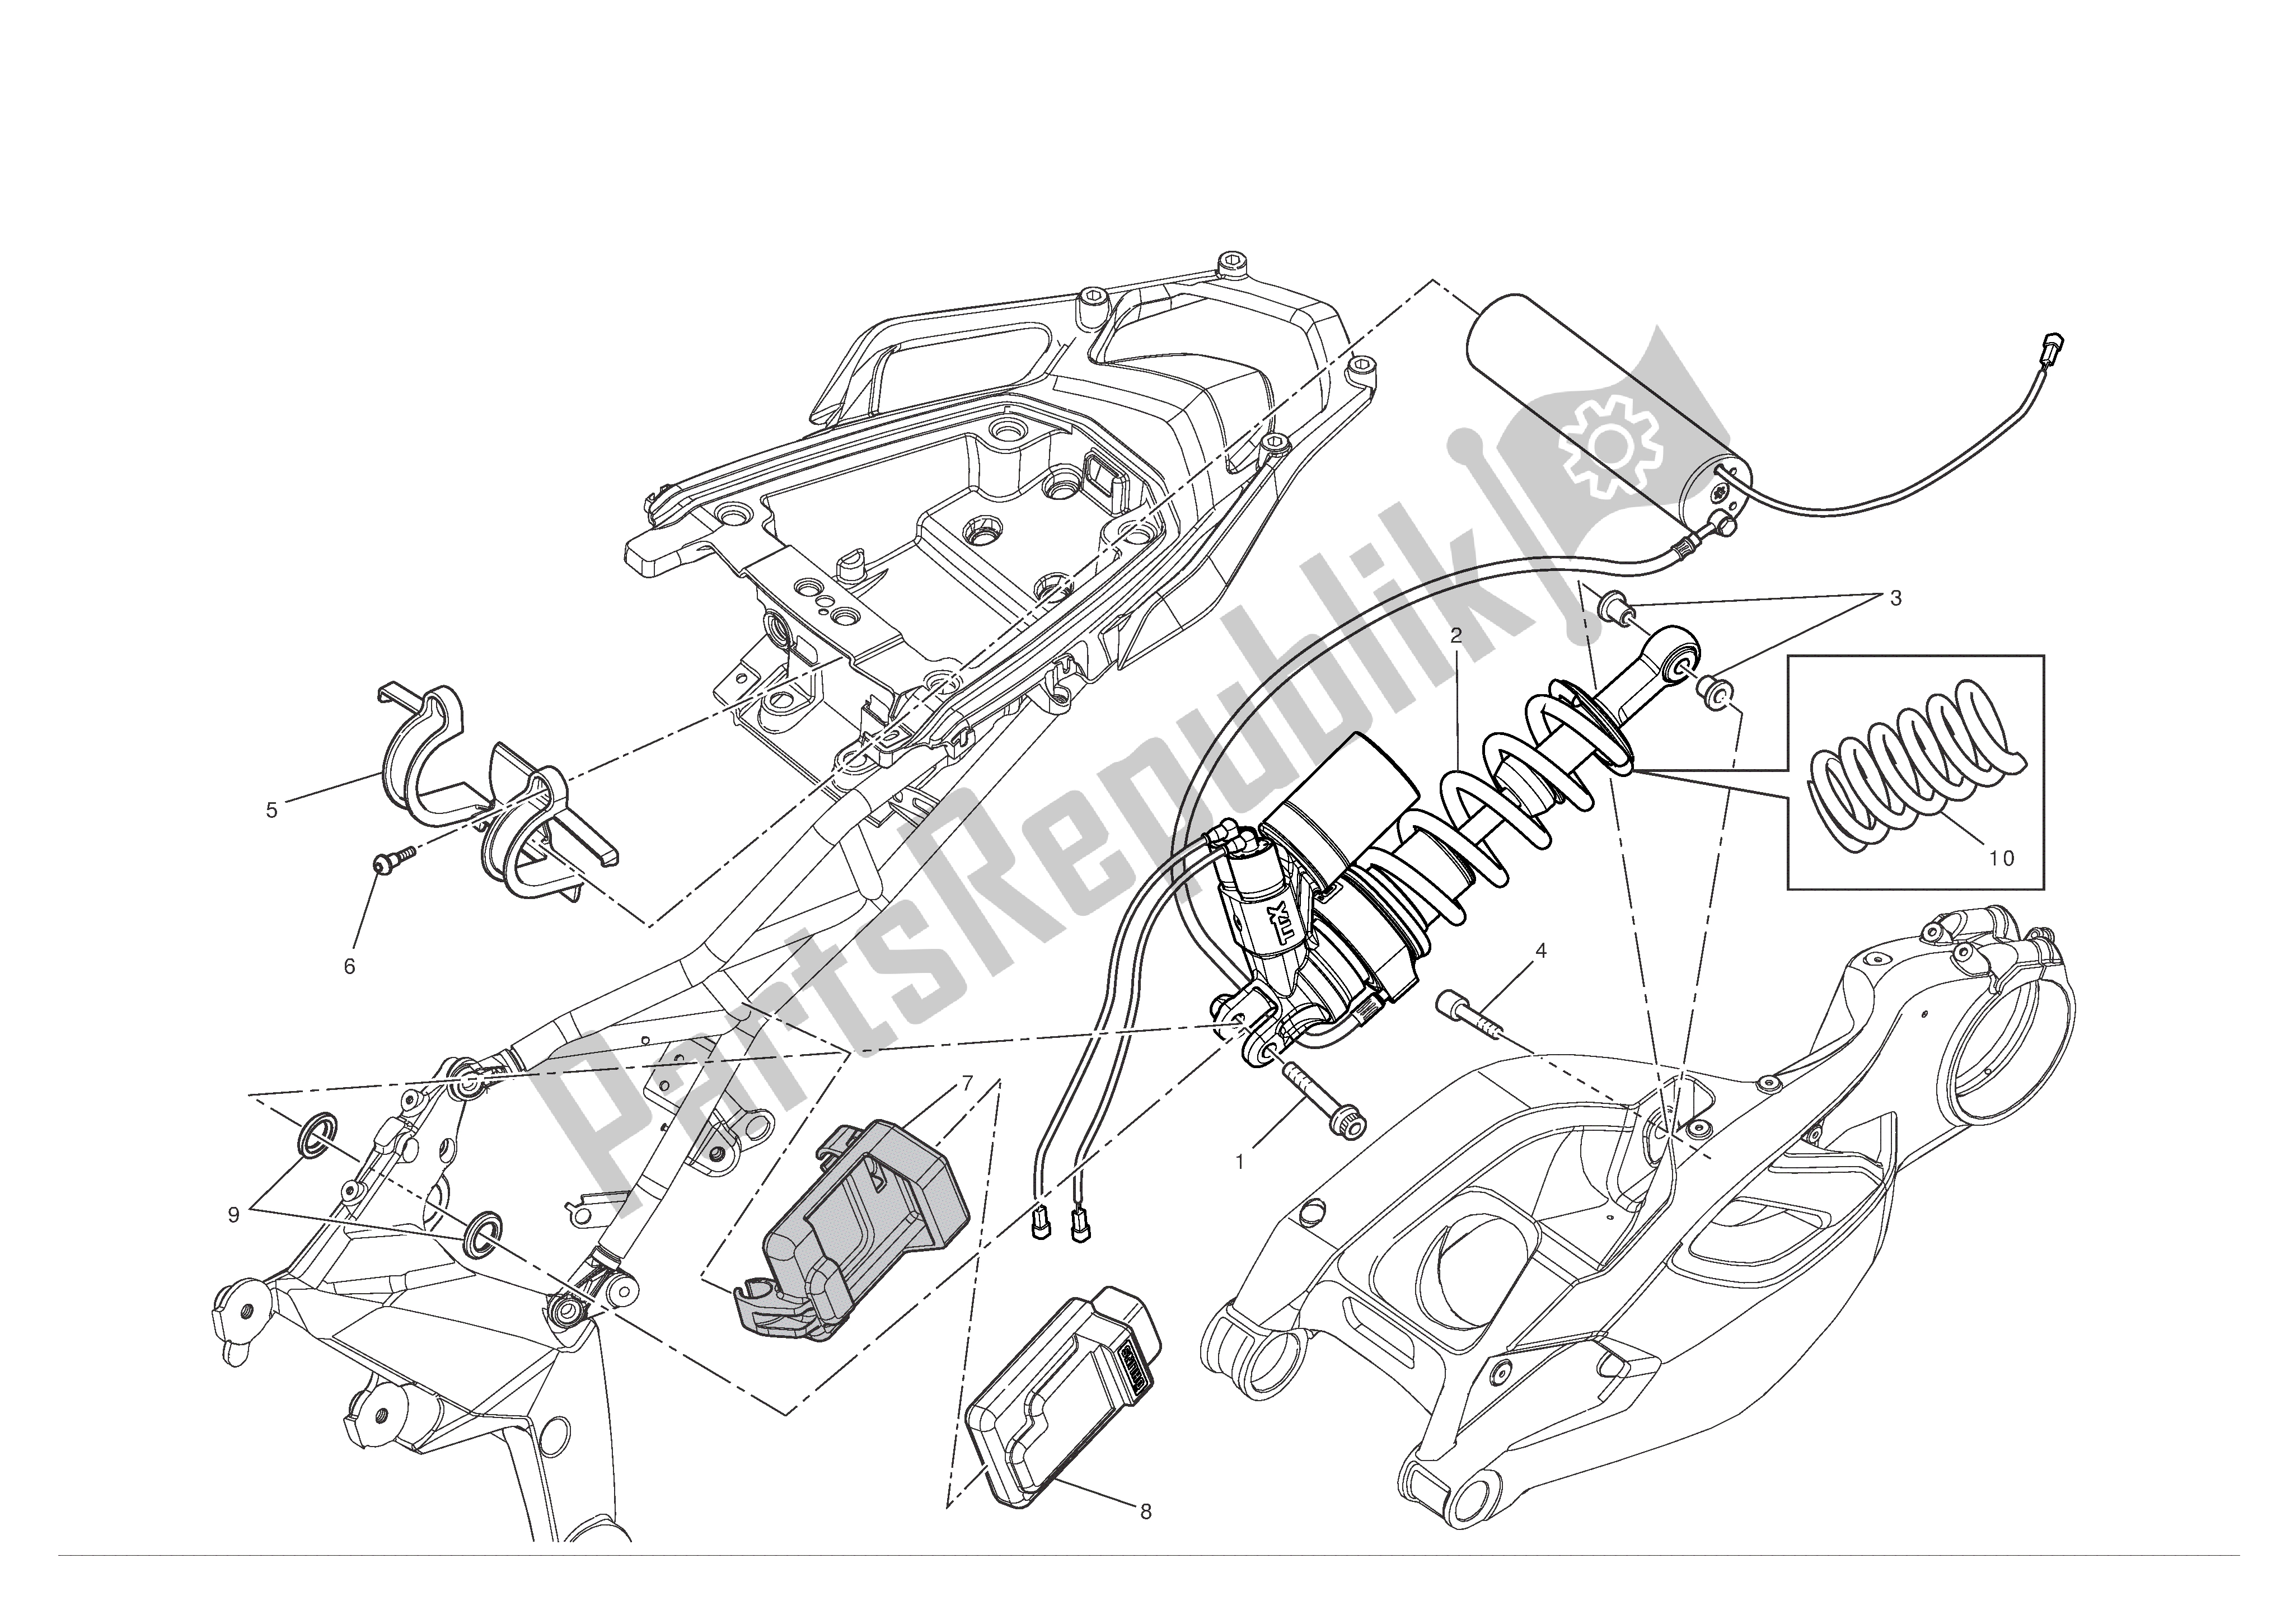 Todas las partes para Suspensión Trasera de Ducati Multistrada S ABS Pikes Peak 1200 2012